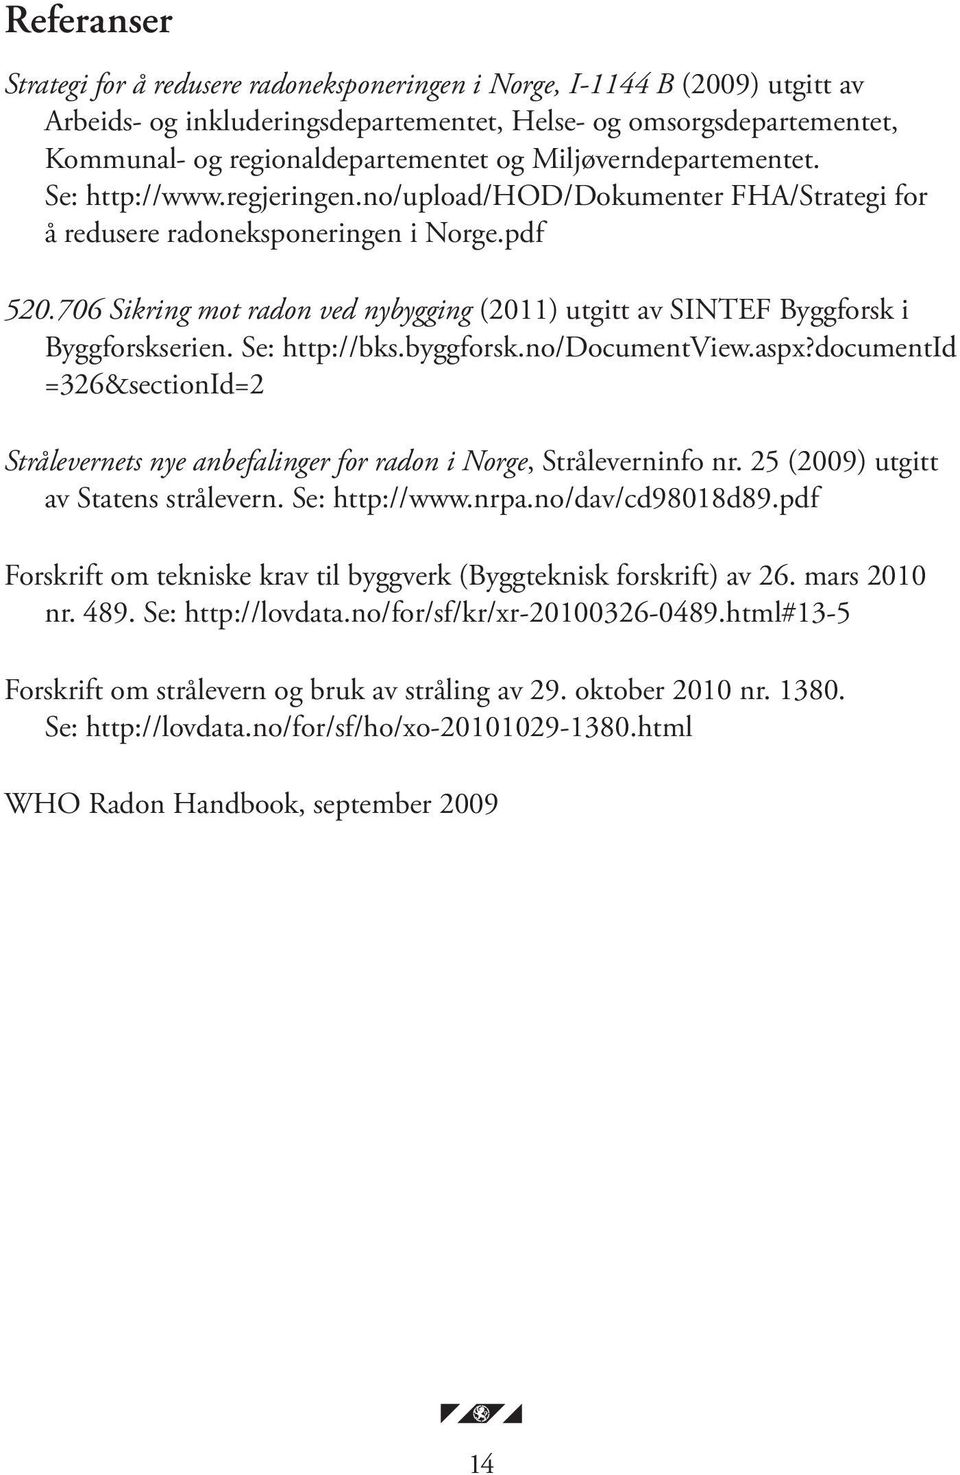 706 Sikring mot radon ved nybygging (2011) utgitt av SINTEF Byggforsk i Byggforskserien. Se: http://bks.byggforsk.no/documentview.aspx?